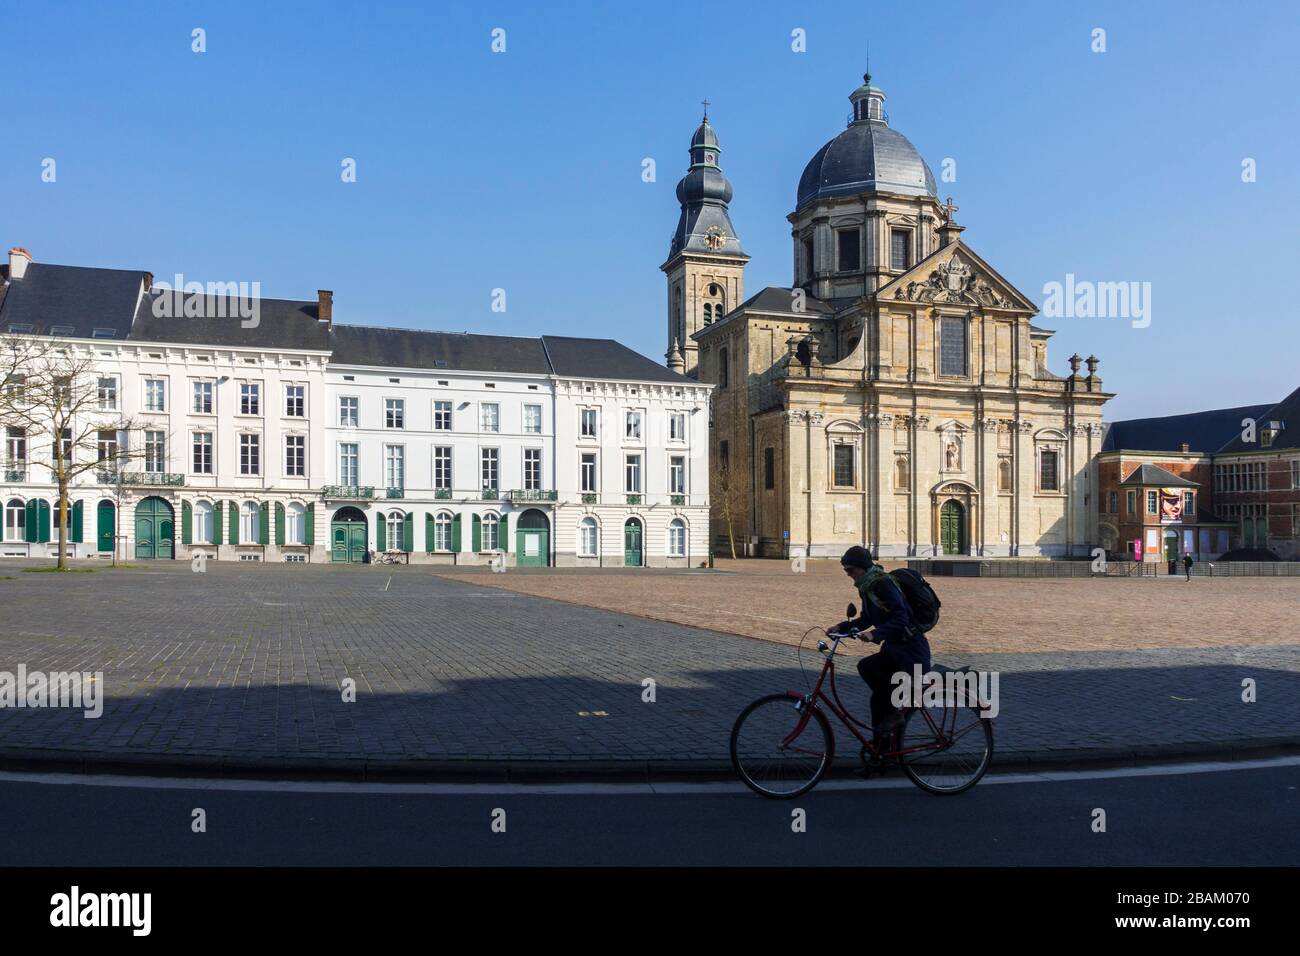 Der Petersplatz ist fast vollständig verlassen, leer aufgrund der COVID-19 von 2020/Coronavirus/Corona-Virus-Pandemie in der flämischen Stadt Gent, Belgien Stockfoto